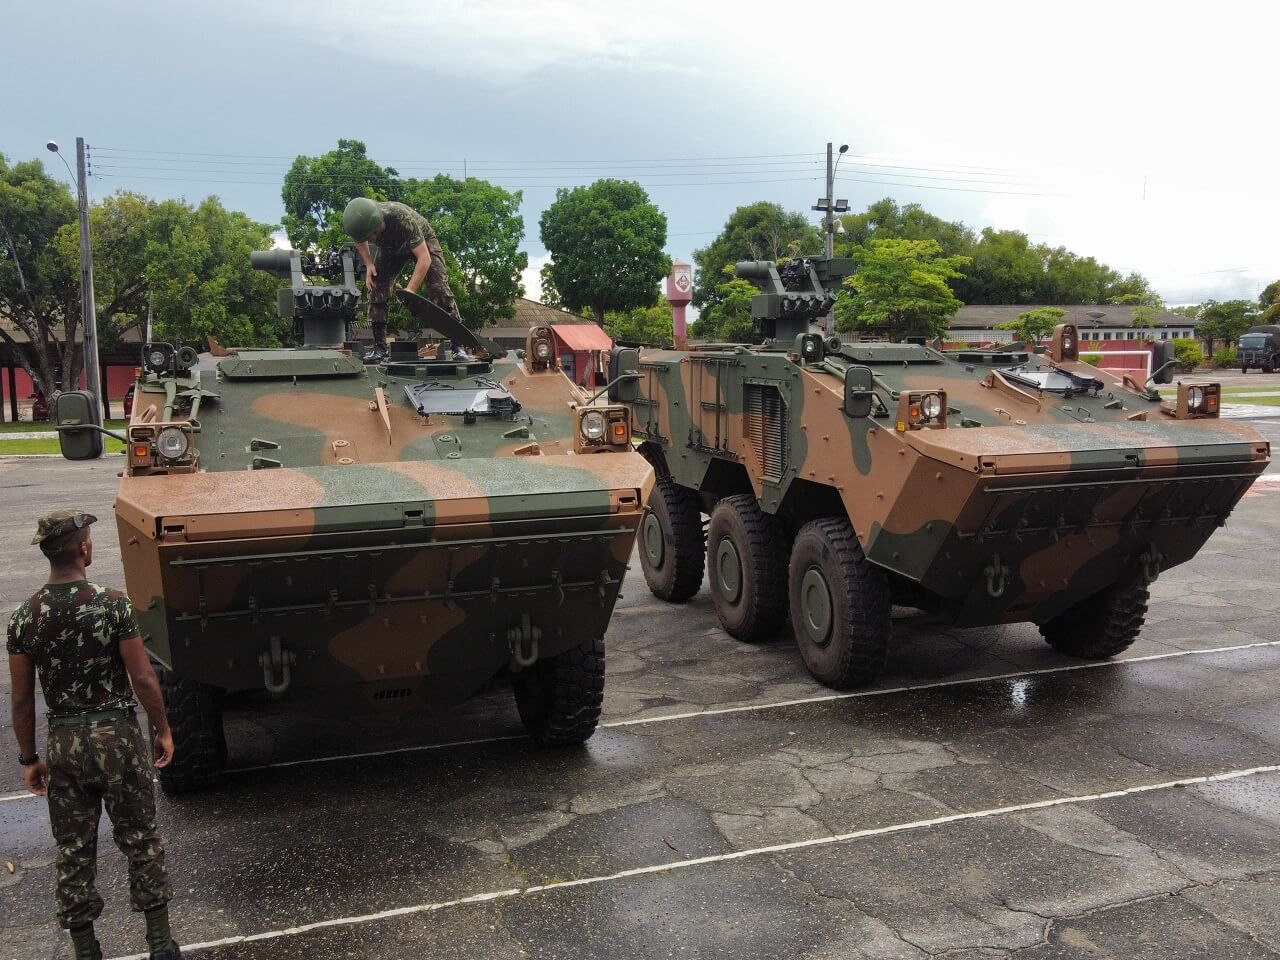 LO Exército Brasileiro envia 20 blindados para Roraima, em meio as